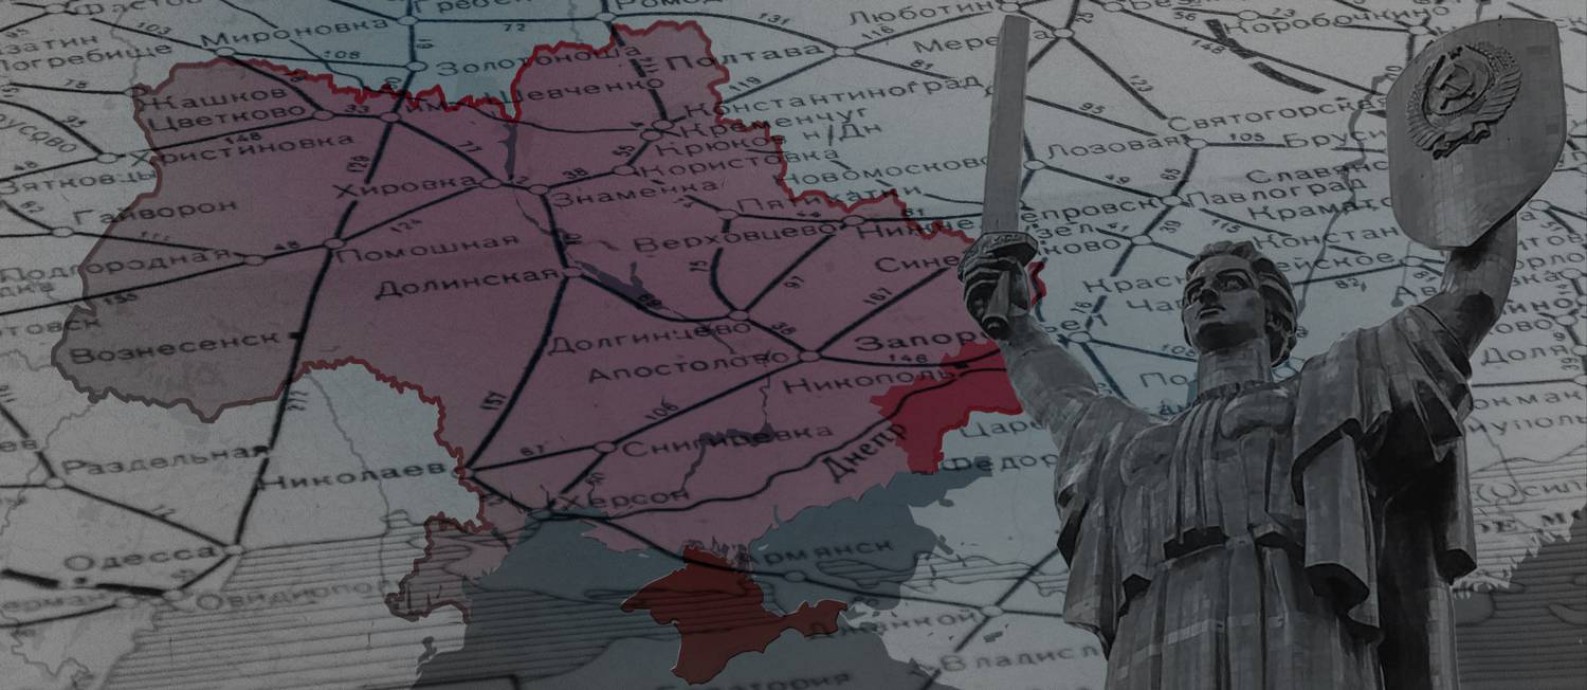 Mapas mostram detalhes da Crise na Ucrânia Foto: Editoria de Arte